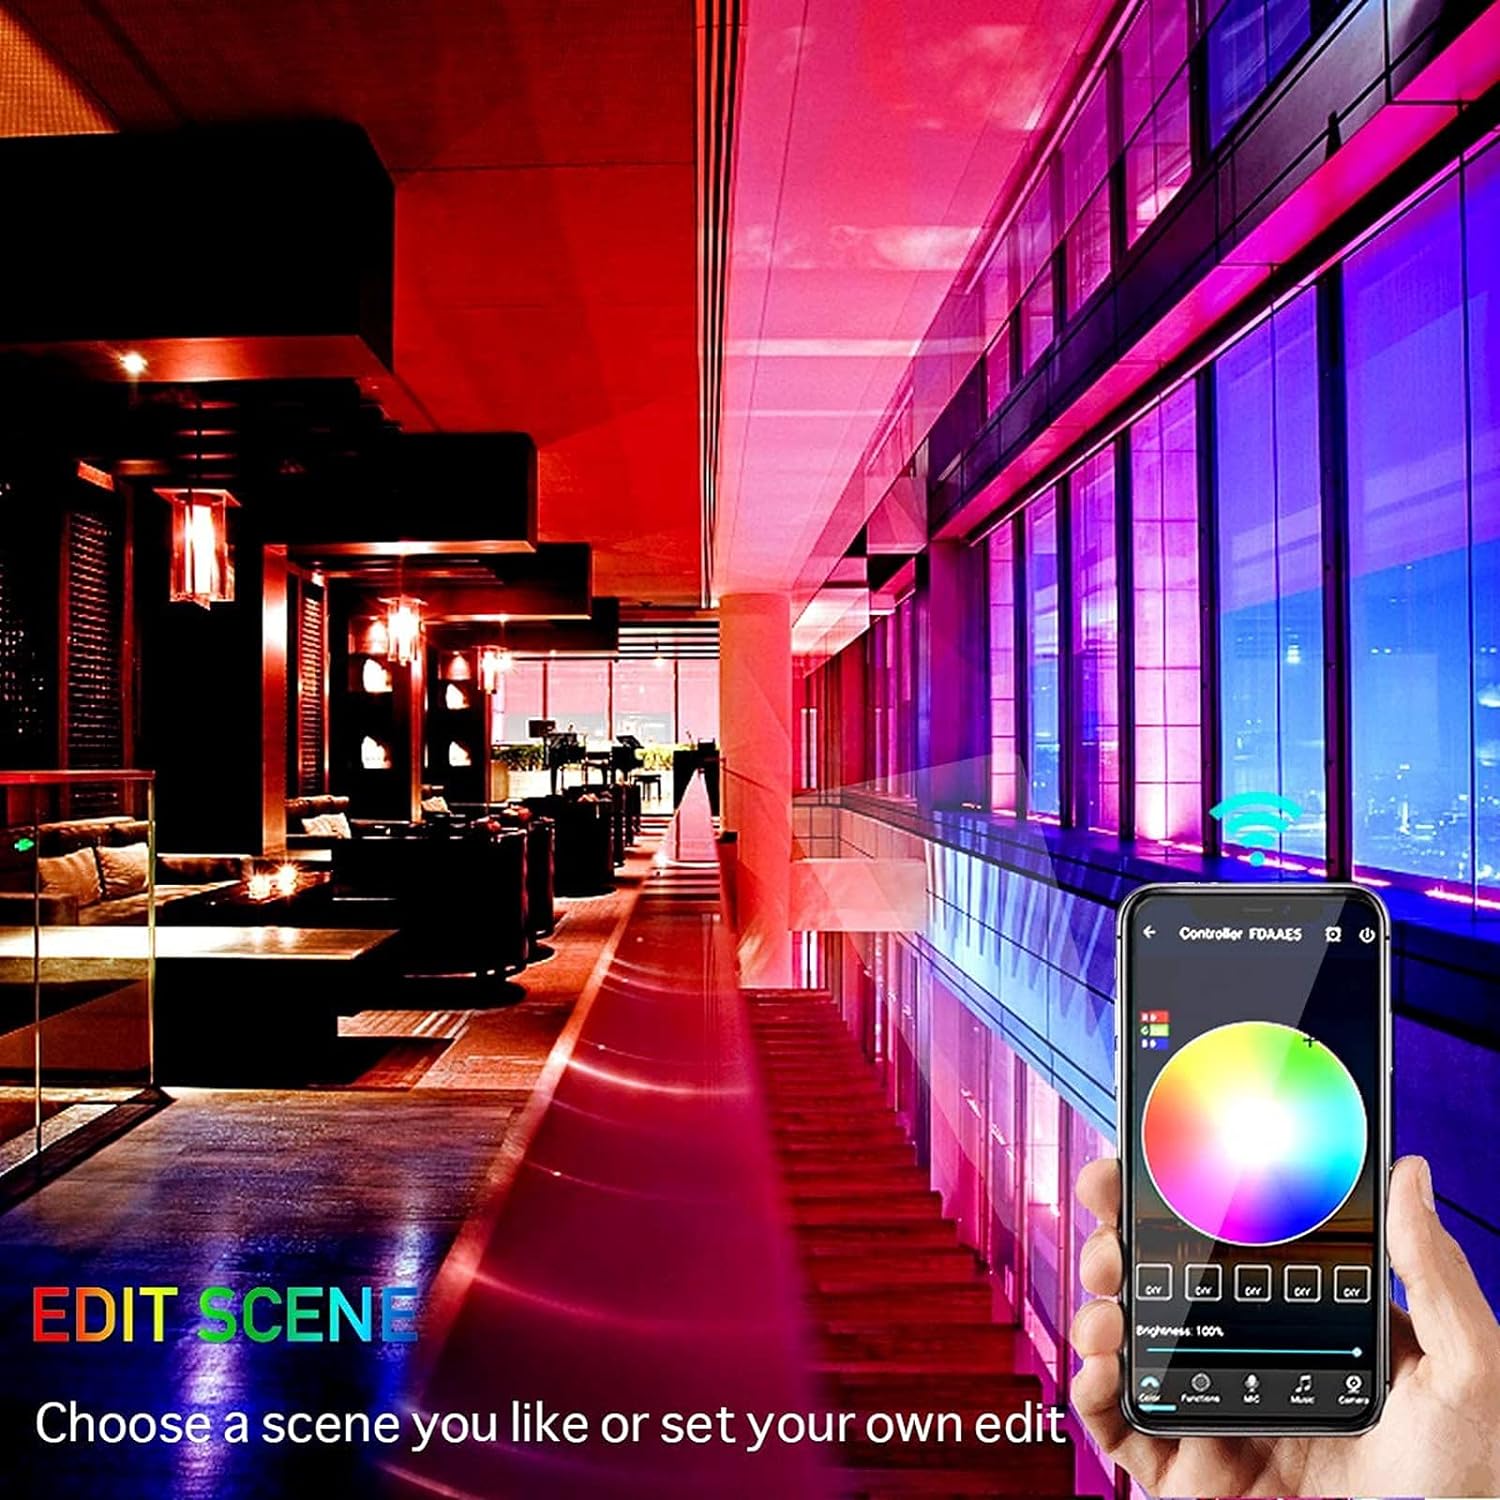 Luces Led Bluetooth,10 Metros (5 Metros + 5 Metros) Tira Led,Mult-Colores Tiras  Led de Luz Led Sync to Música con Control Remoto y App del Teléfono  Inteligente Compatible con iOS y Android